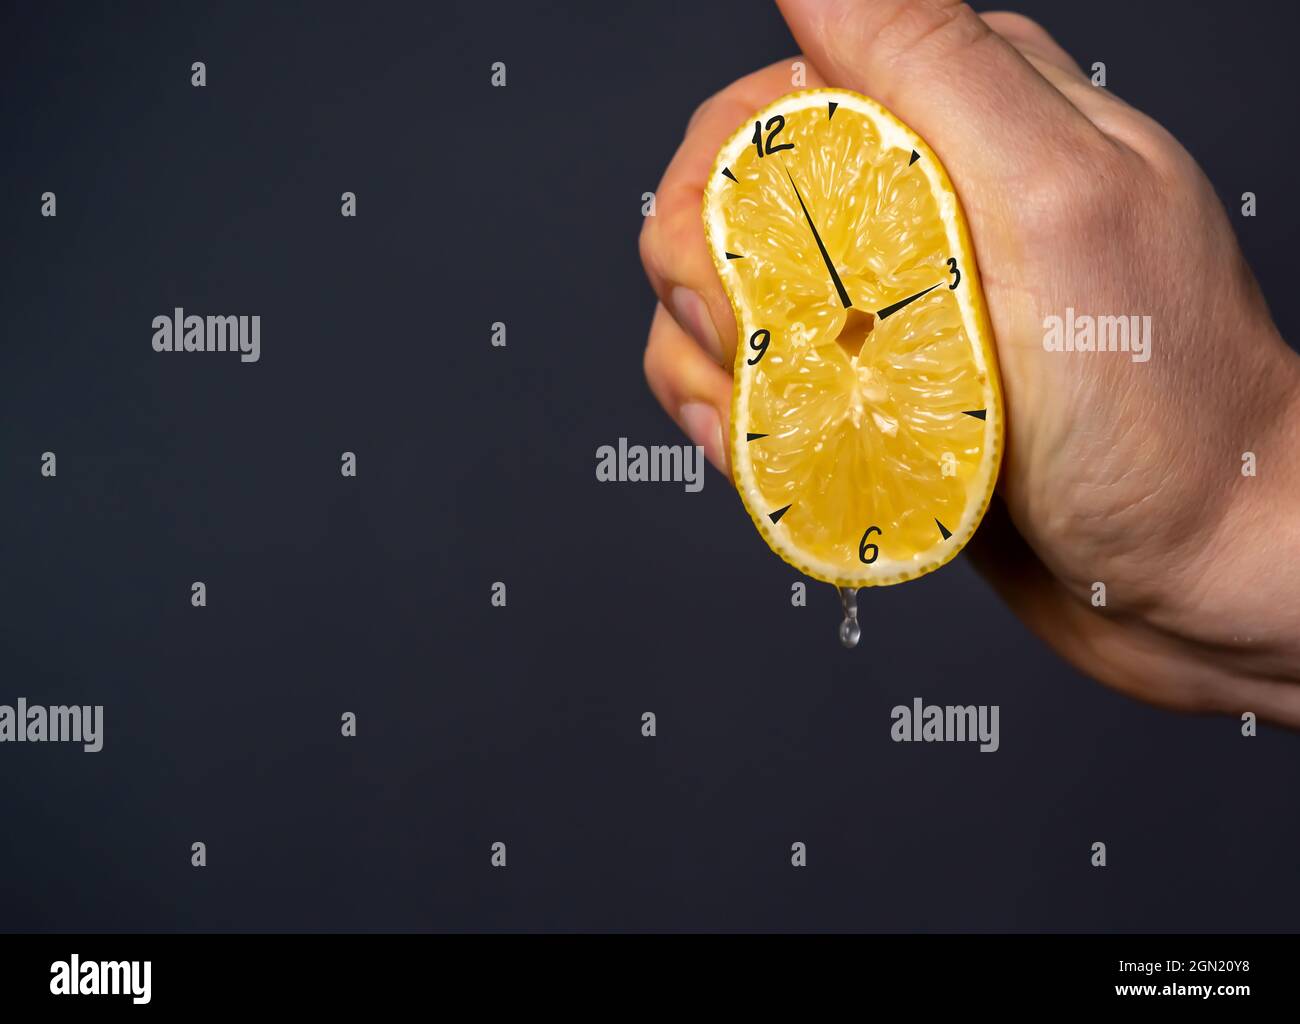 Die Hand drückt eine Zitrone aus, auf die die Uhr gezogen wird  Stockfotografie - Alamy